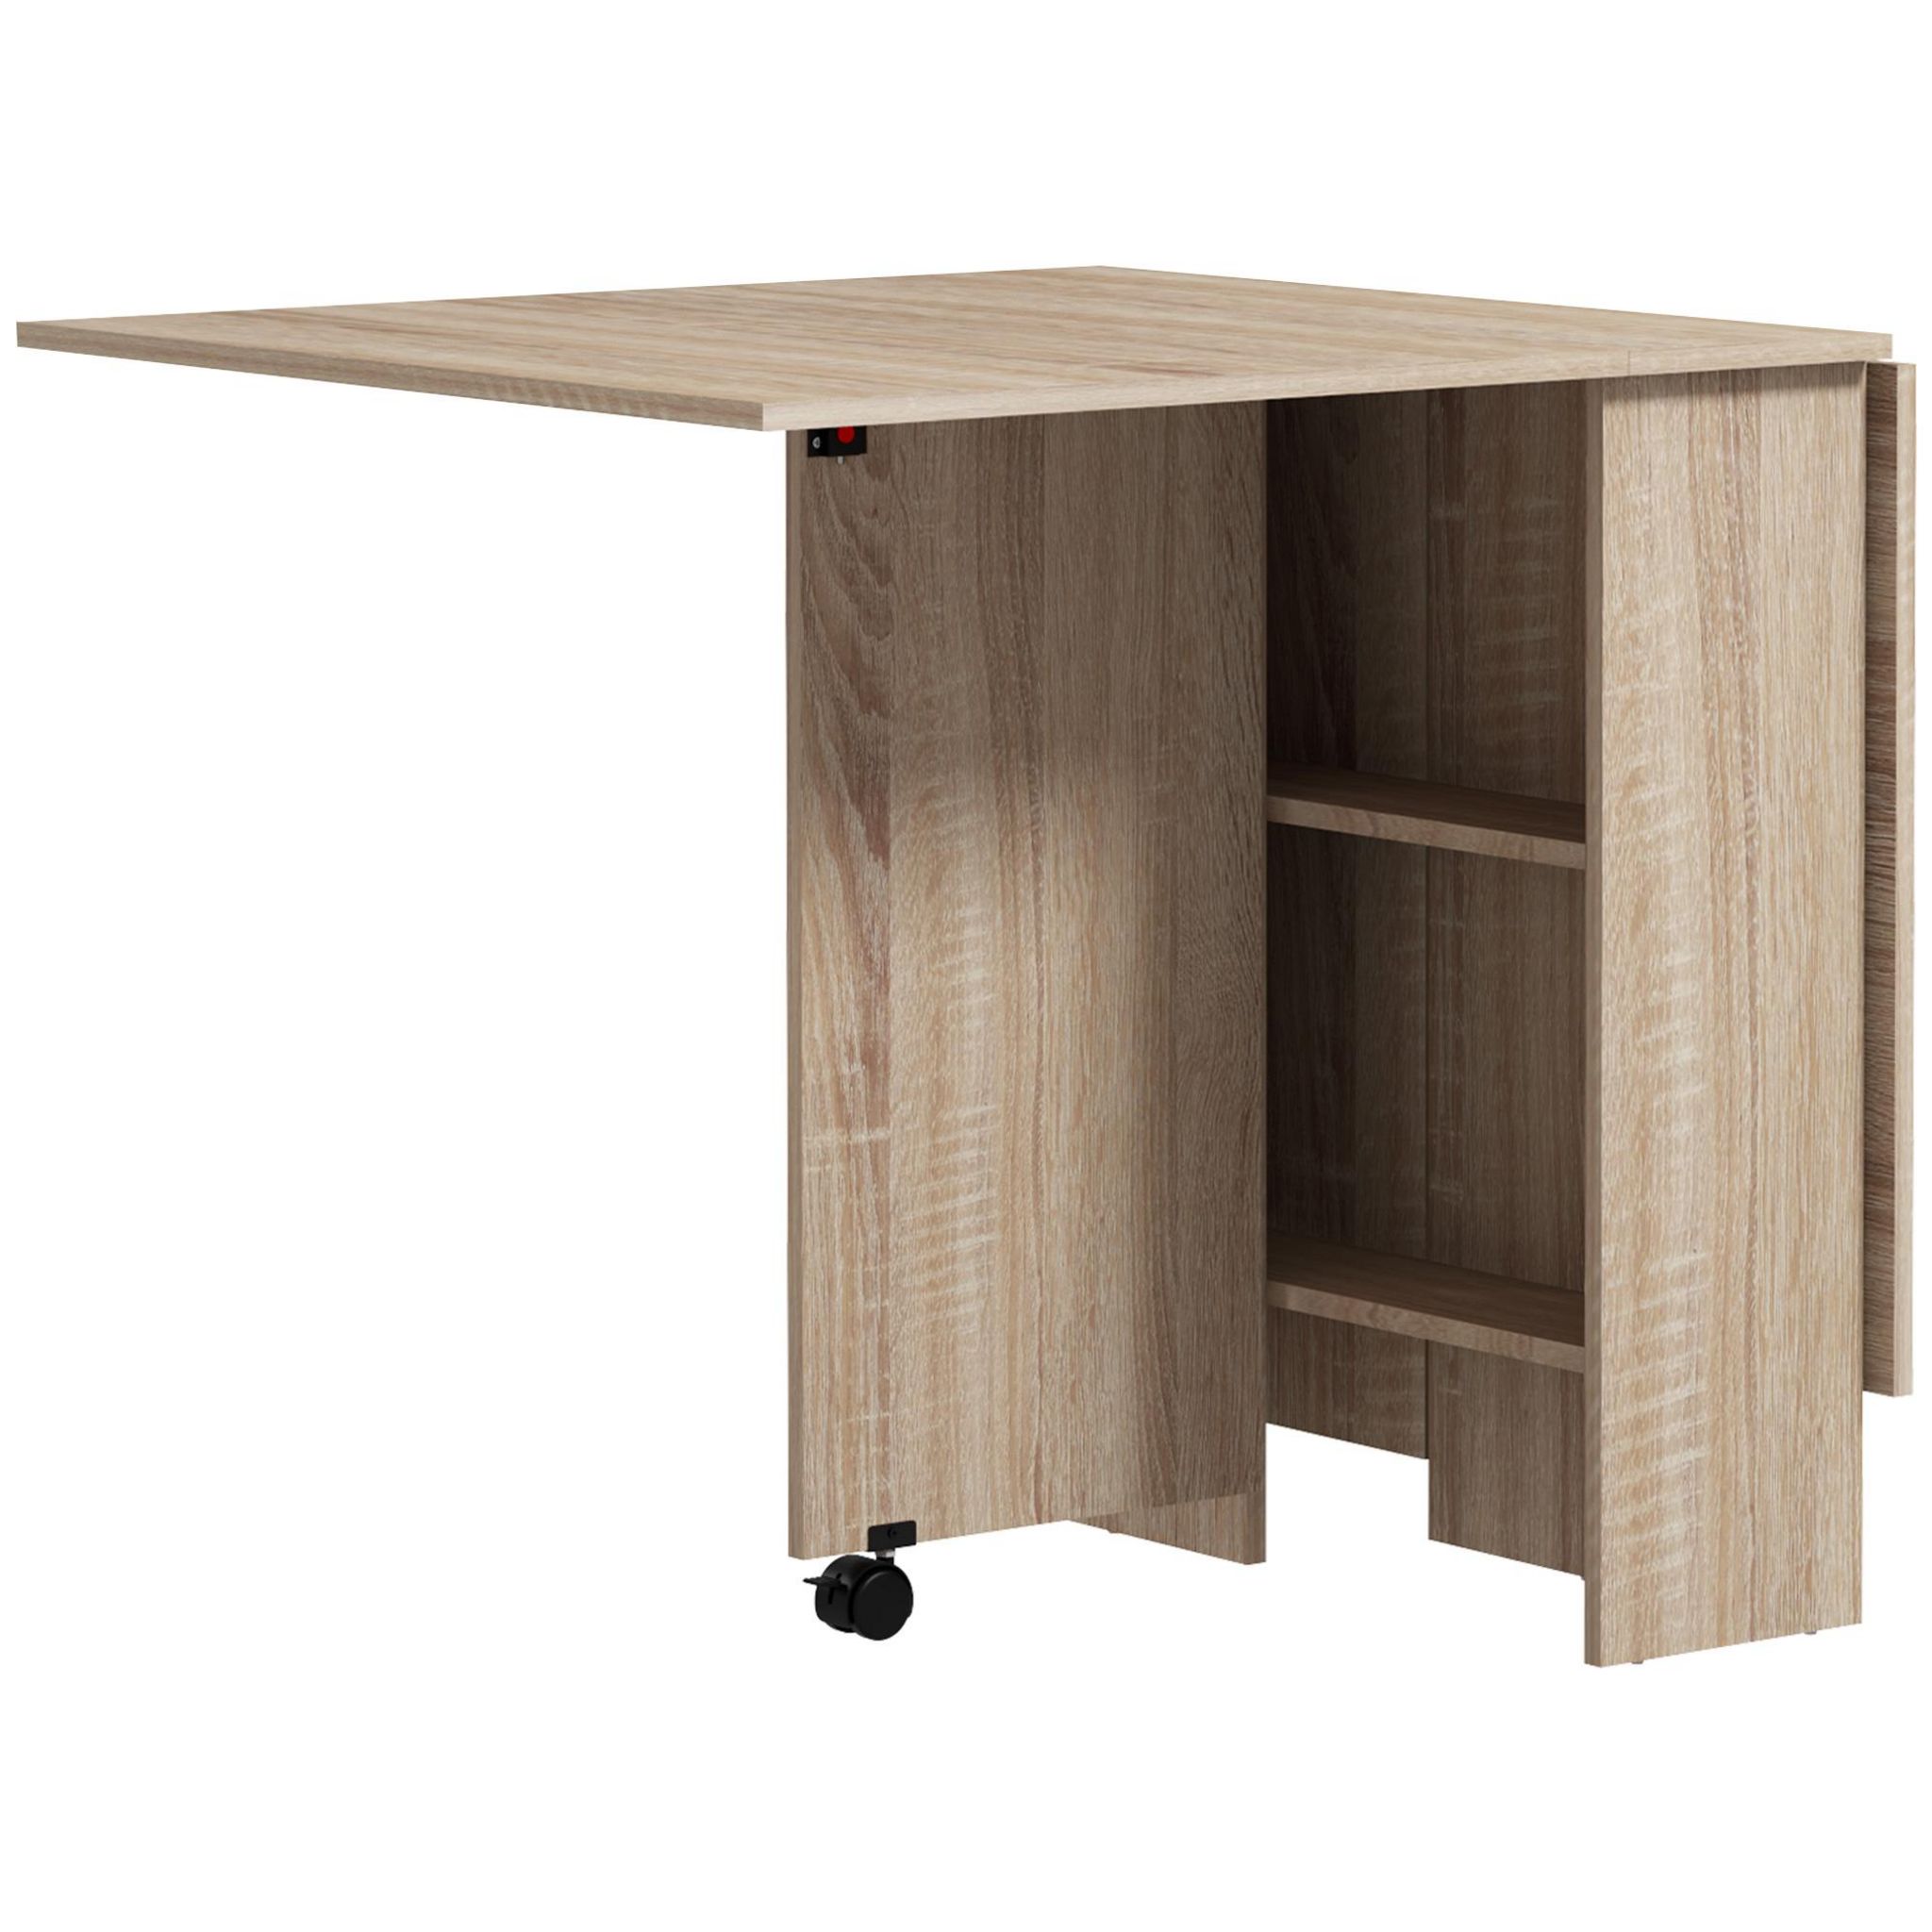 Table haute pliante bois – Fournisseur numéro 1 de la Table Pliante